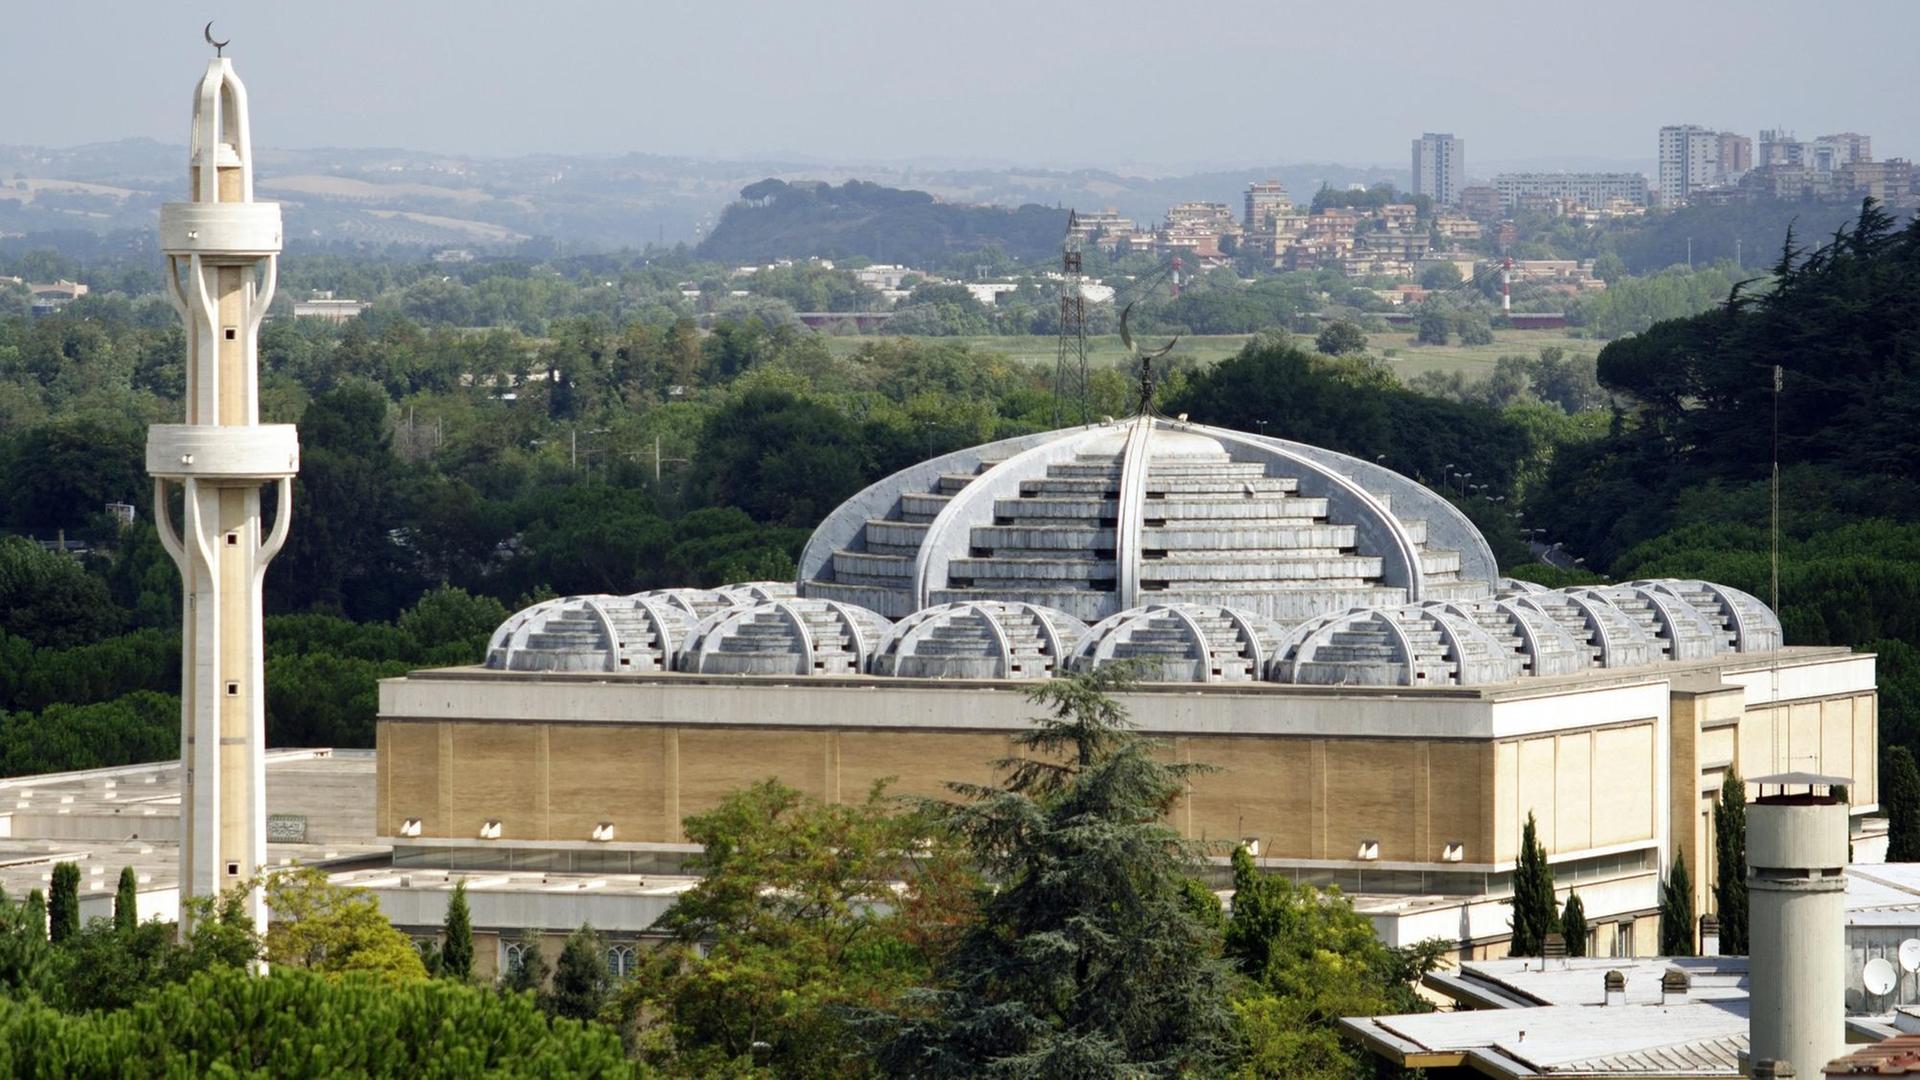 Blick auf Europas größte Moschee in der italienischen Hauptstadt Rom. Die Moschee bietet Platz für bis zu 2000 Menschen.